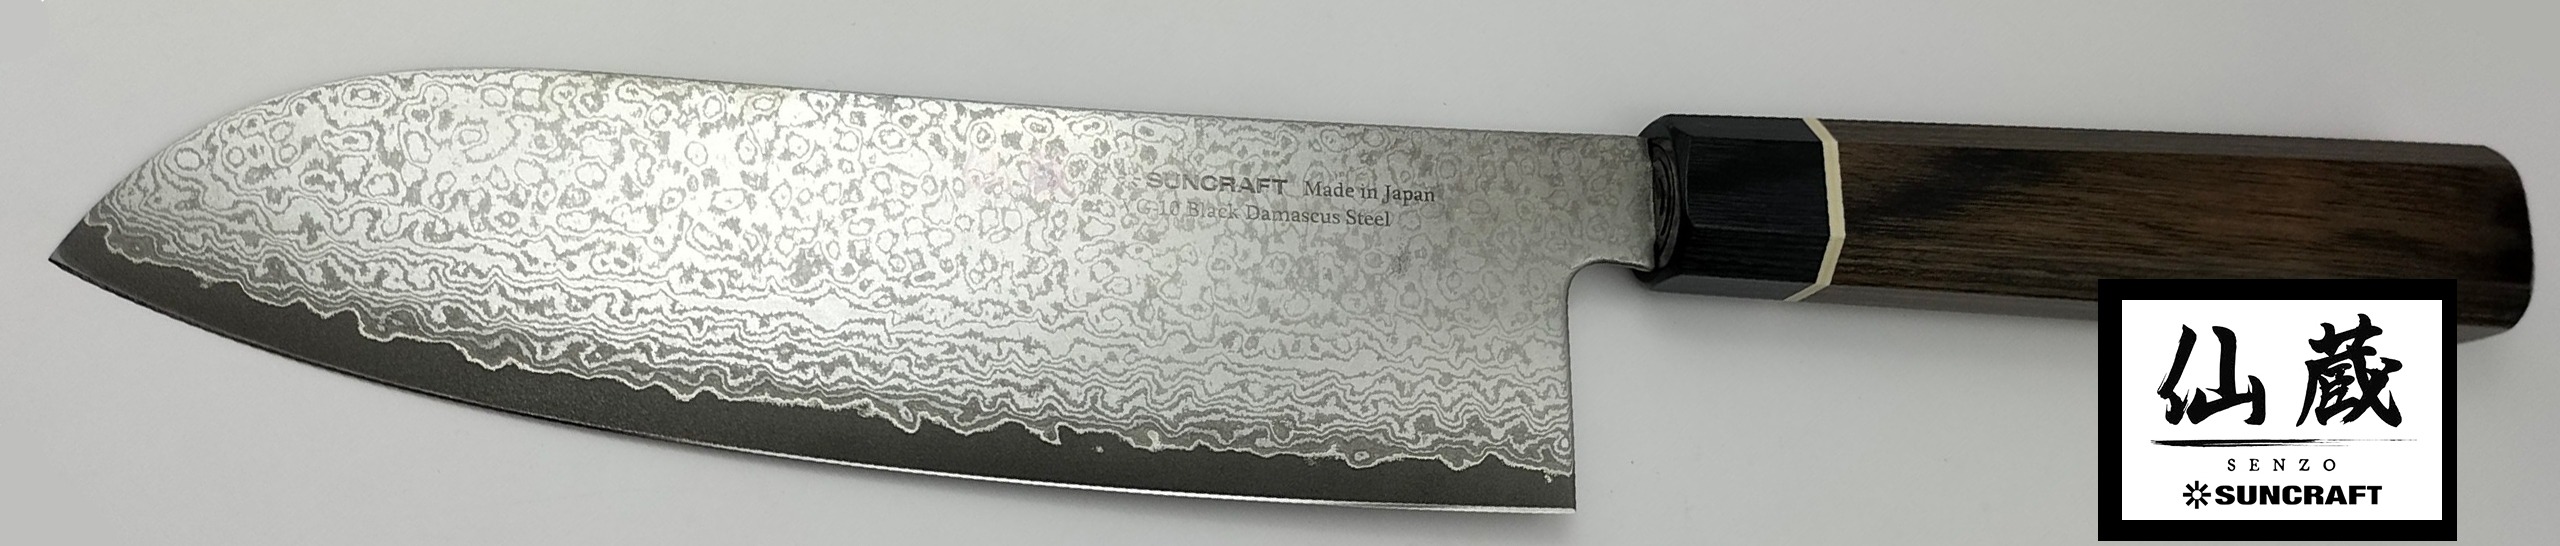 Couteau Japonais Suncraft Senzo paris 1